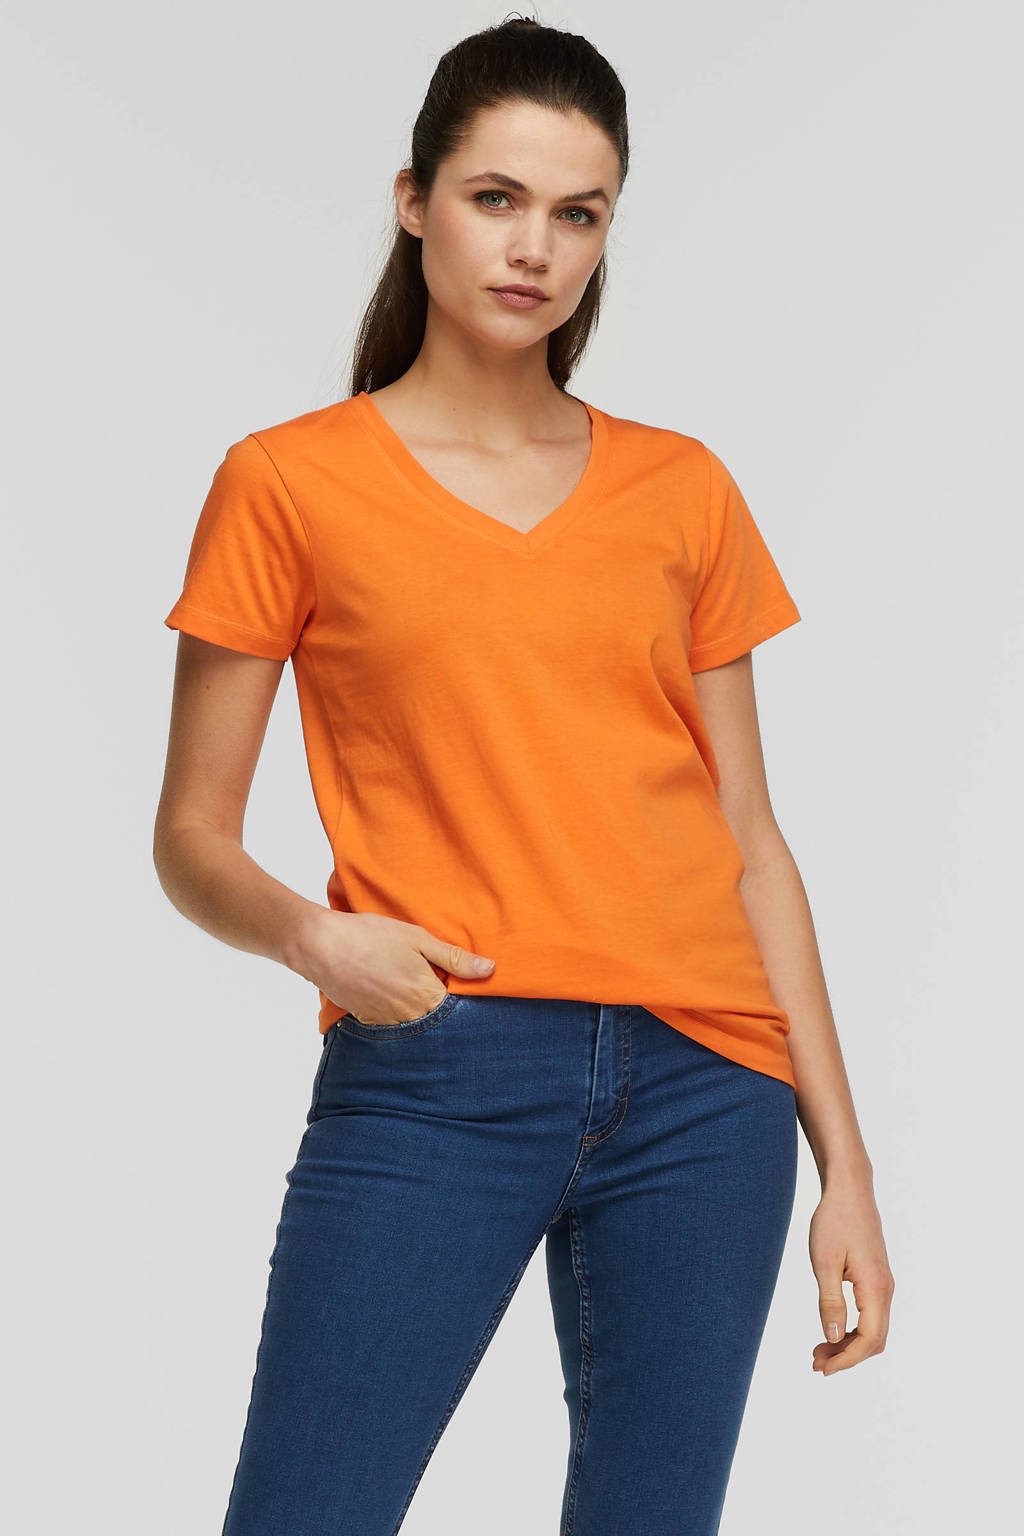 Meander olie Bank anytime T-shirt met V-hals oranje | wehkamp